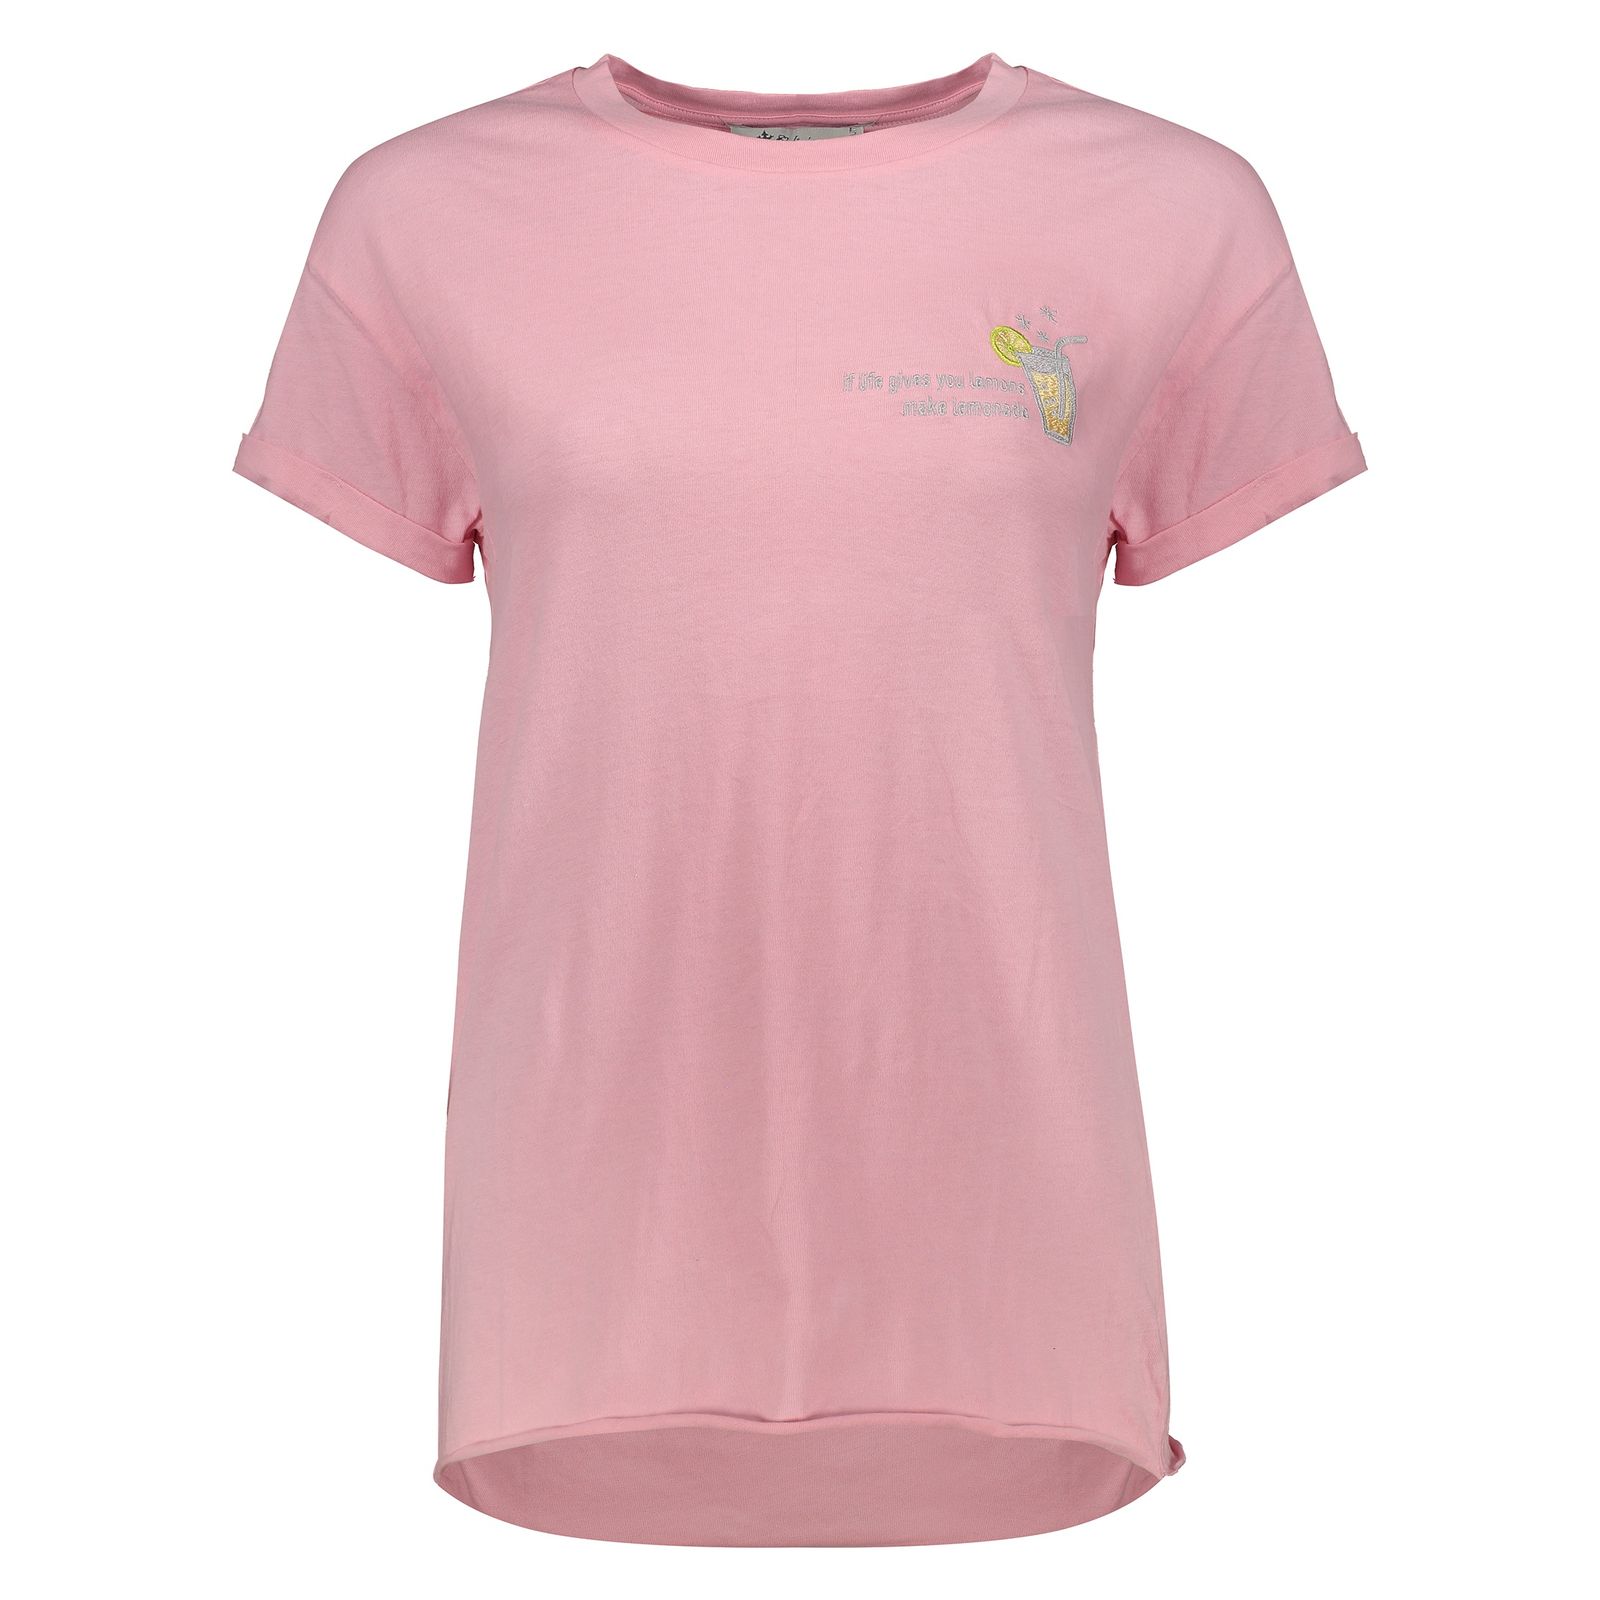 تی شرت زنانه کالینز مدل CL1034147-PINK - صورتی - 1